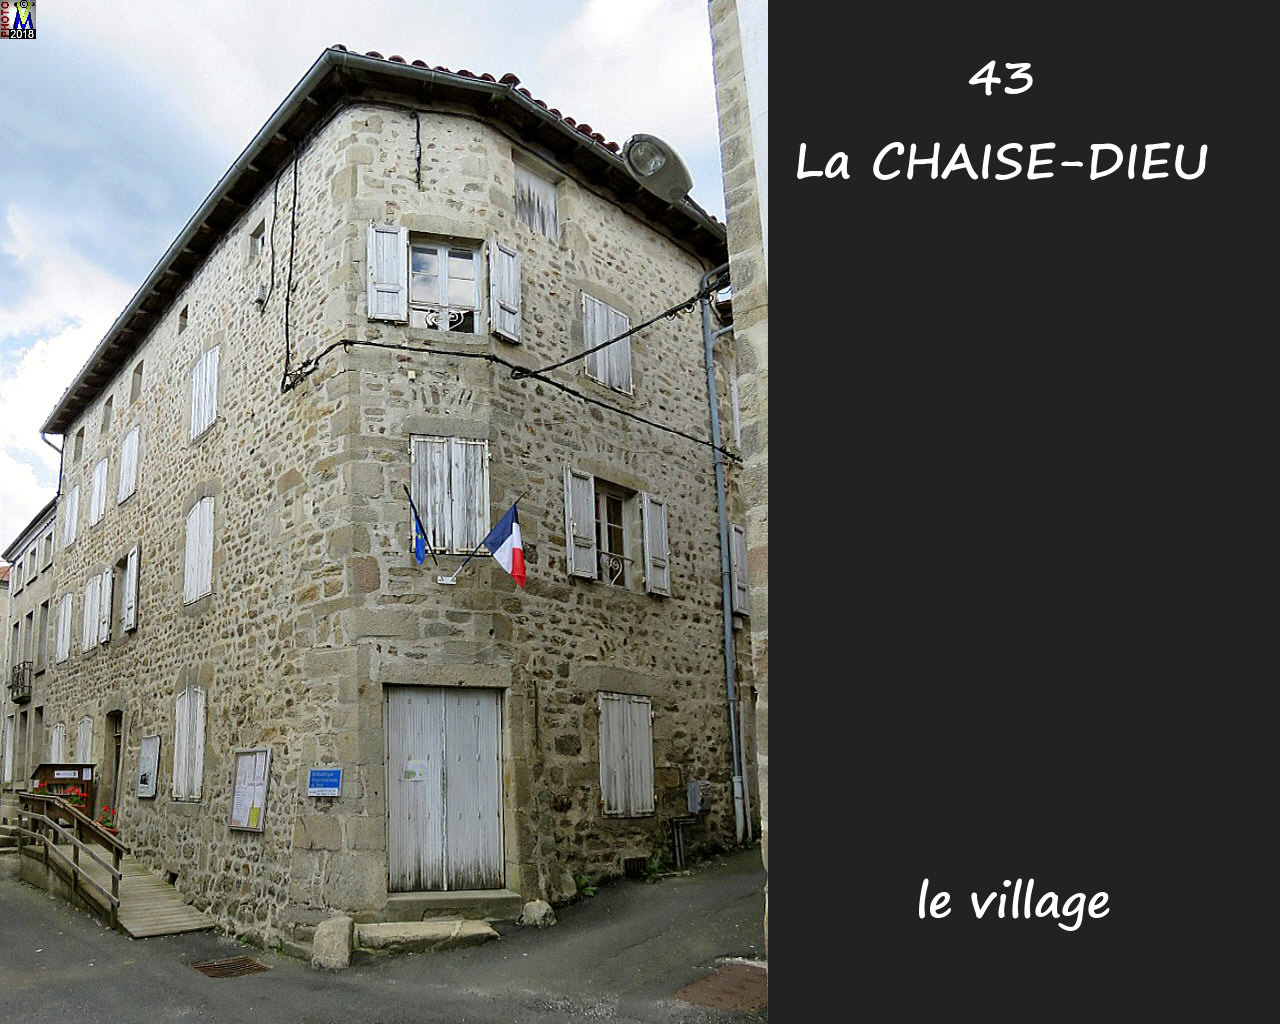 43CHAISE-DIEU_village_142.jpg